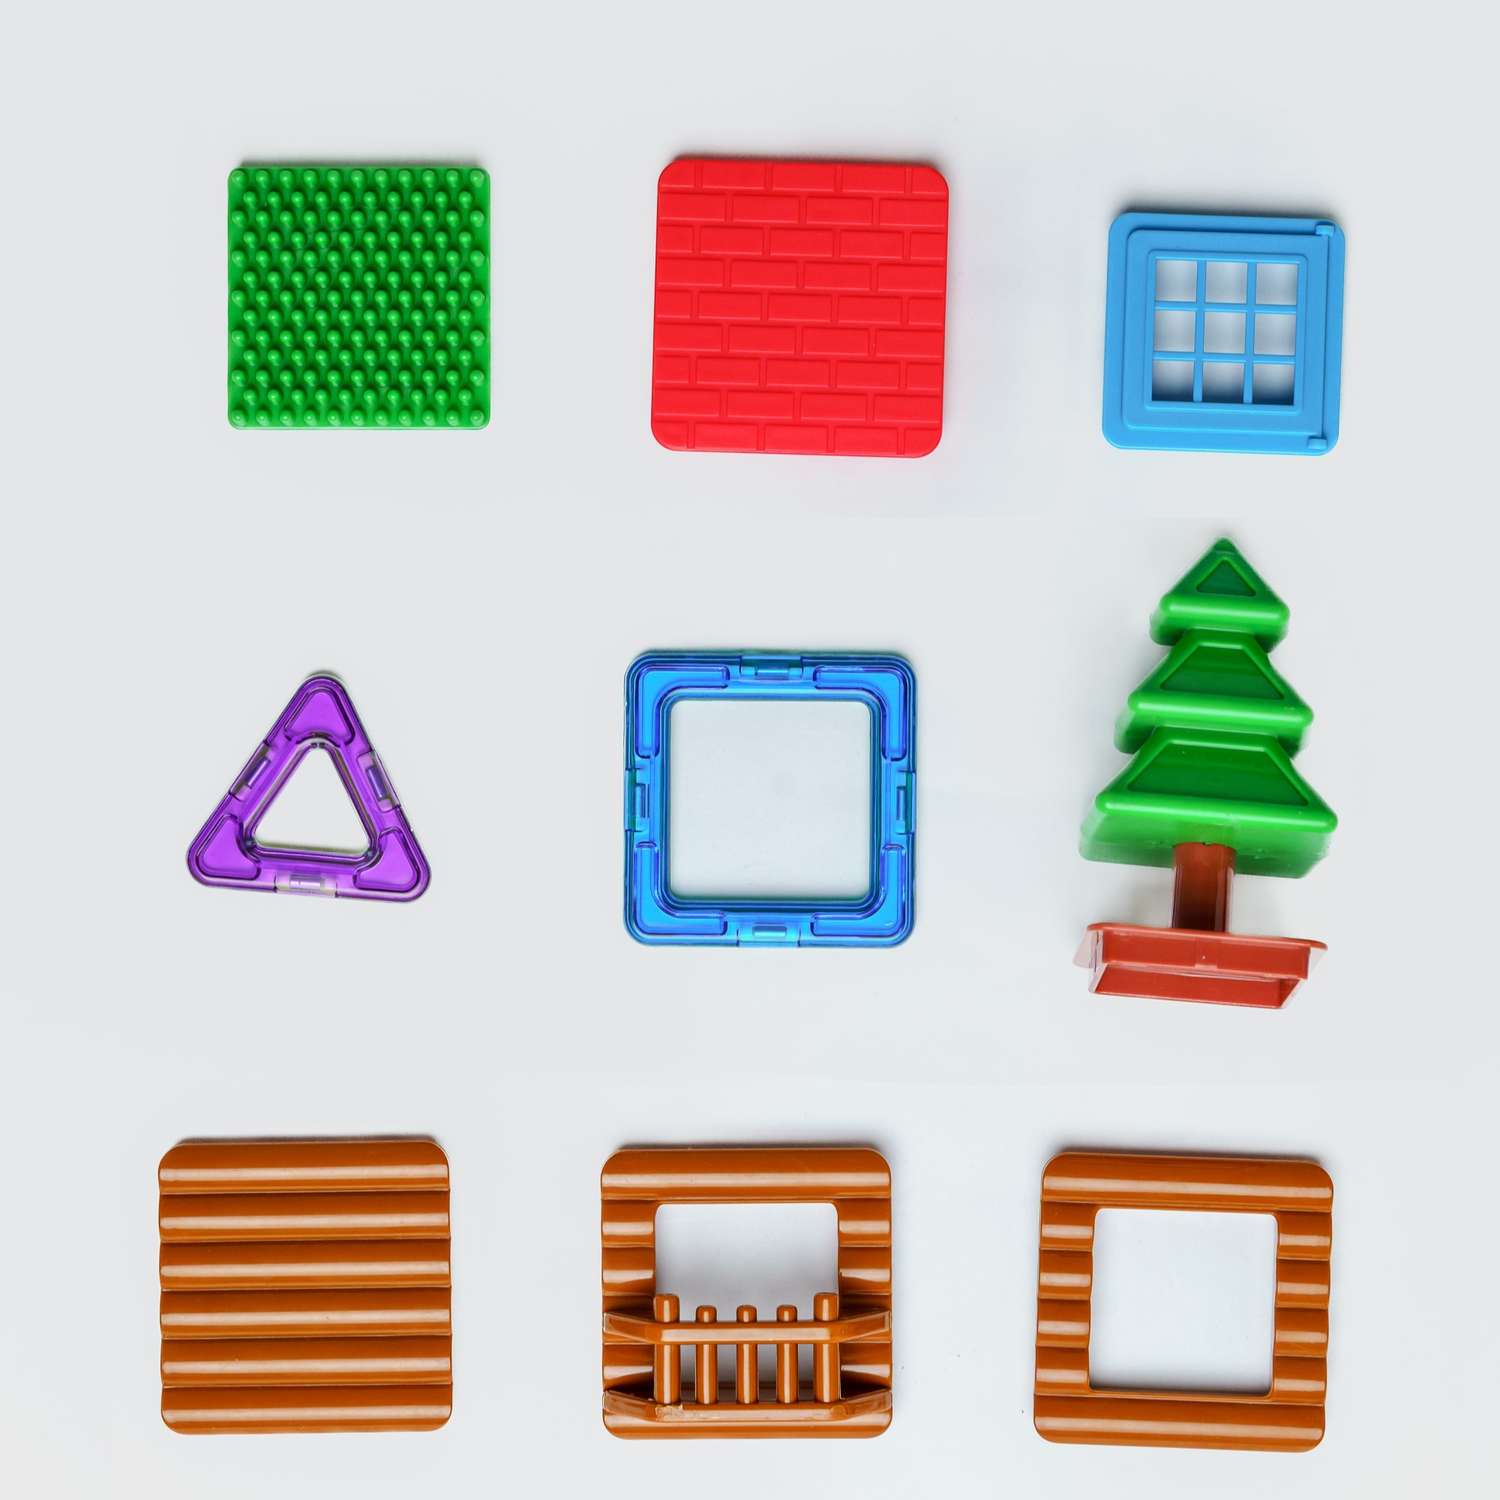 Конструктор Крибли Бу магнитный пластиковый сборный/детская развивающая игрушка с крупными деталями 48 элементов - фото 10